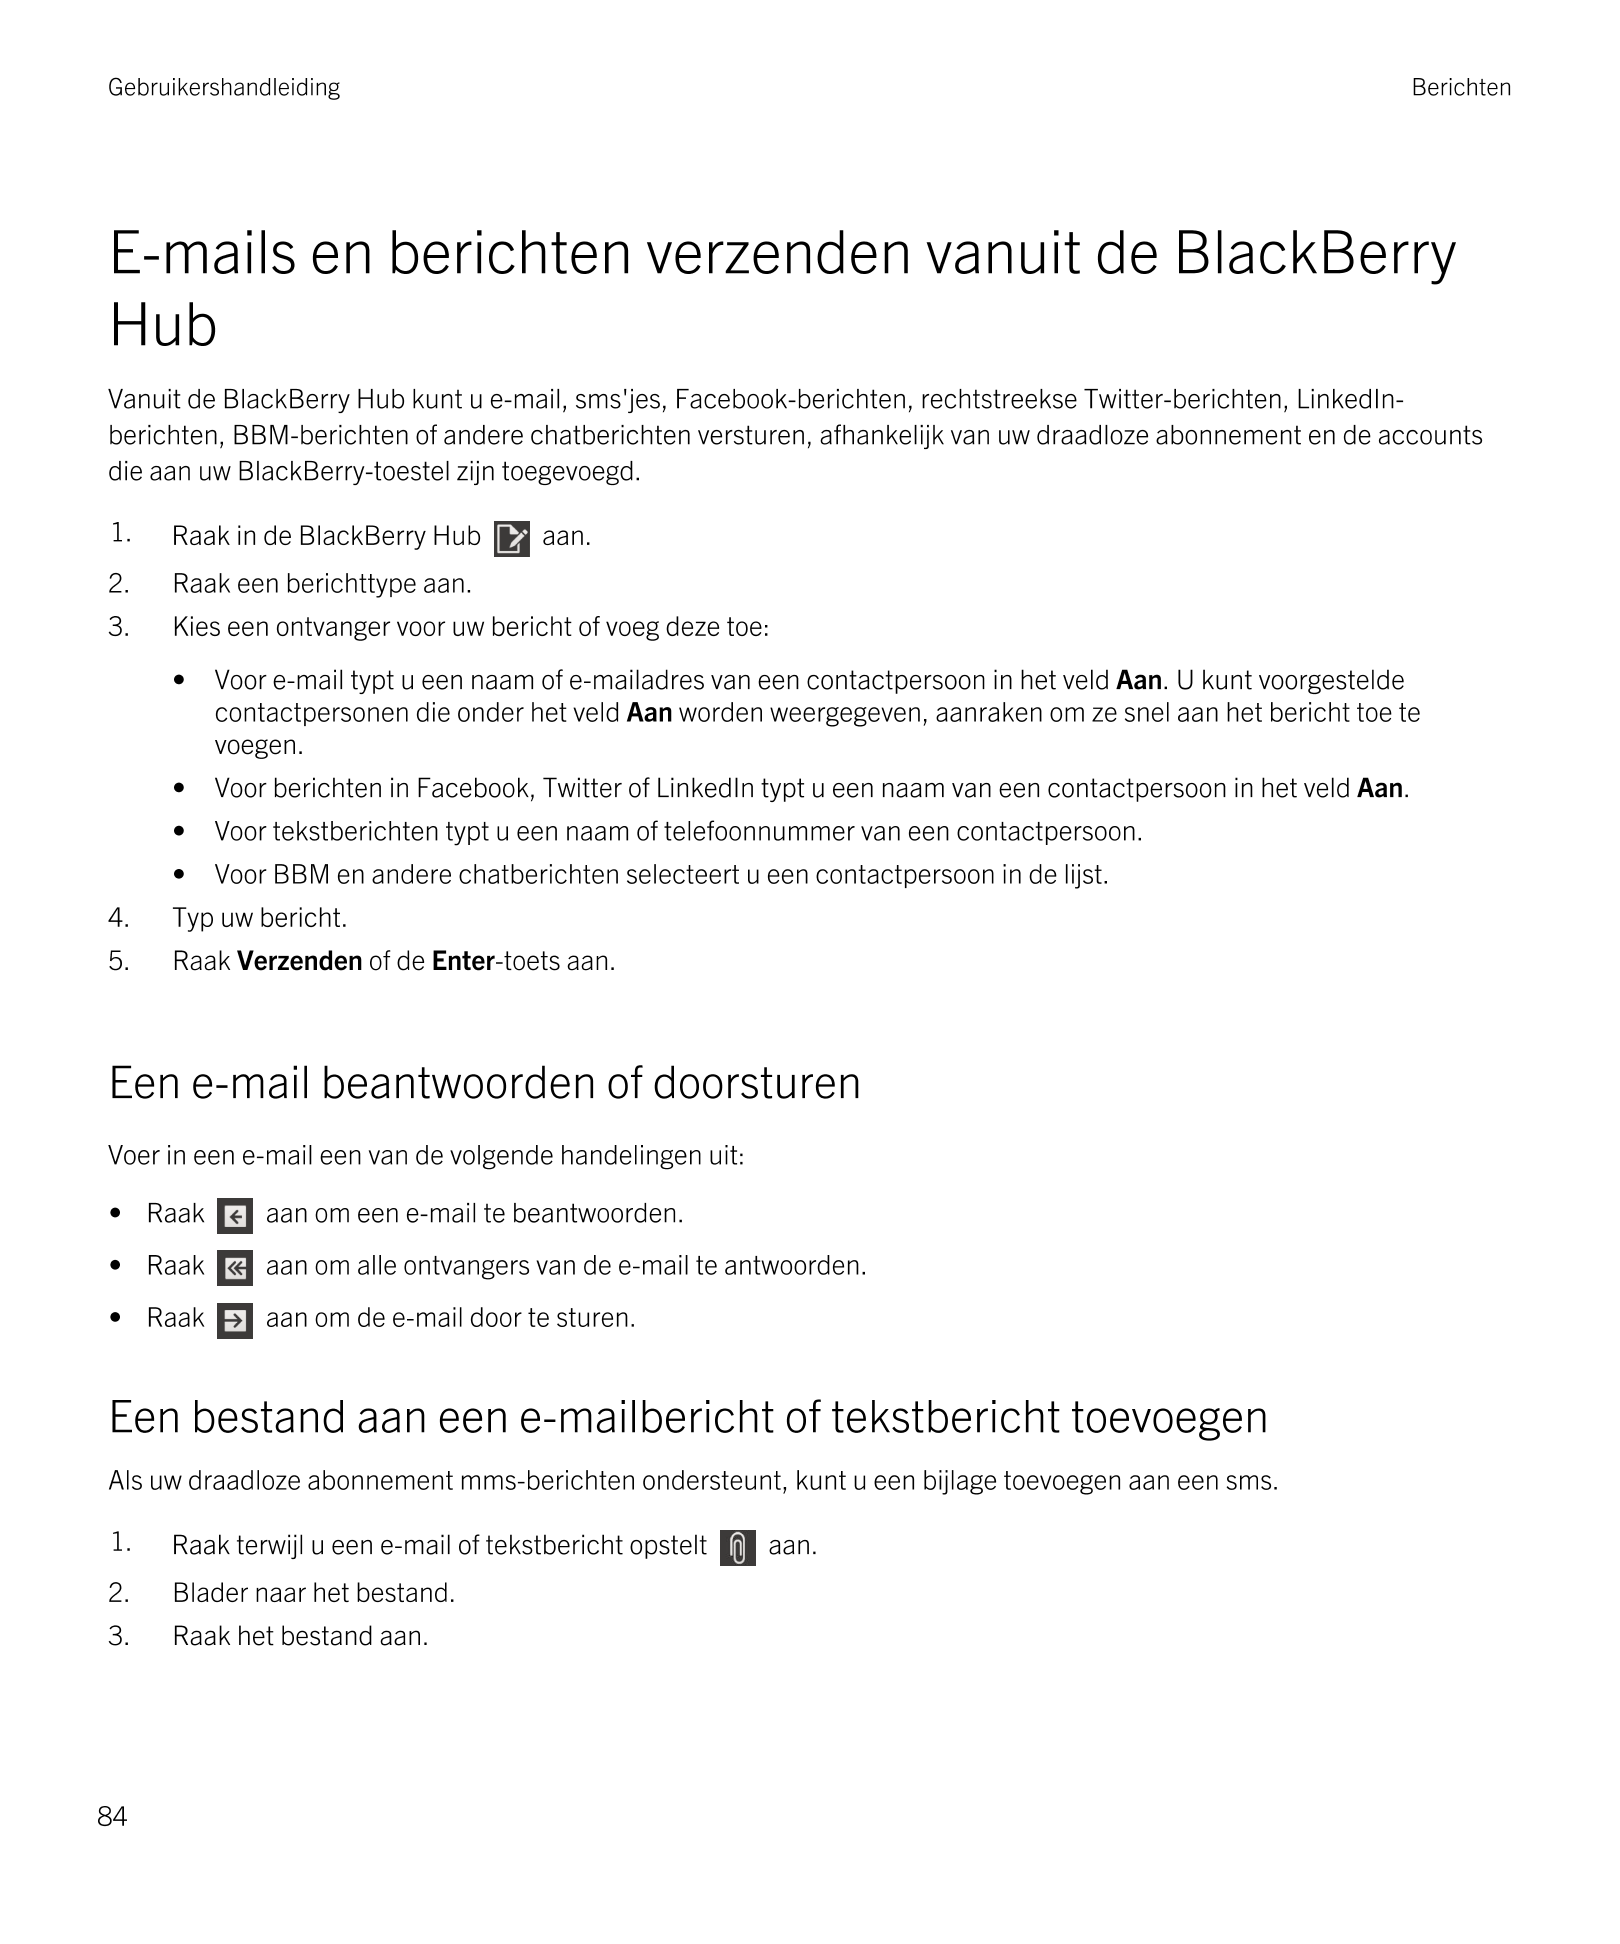 Gebruikershandleiding Berichten
E-mails en berichten verzenden vanuit de  BlackBerry 
Hub
Vanuit de  BlackBerry Hub kunt u e-mai